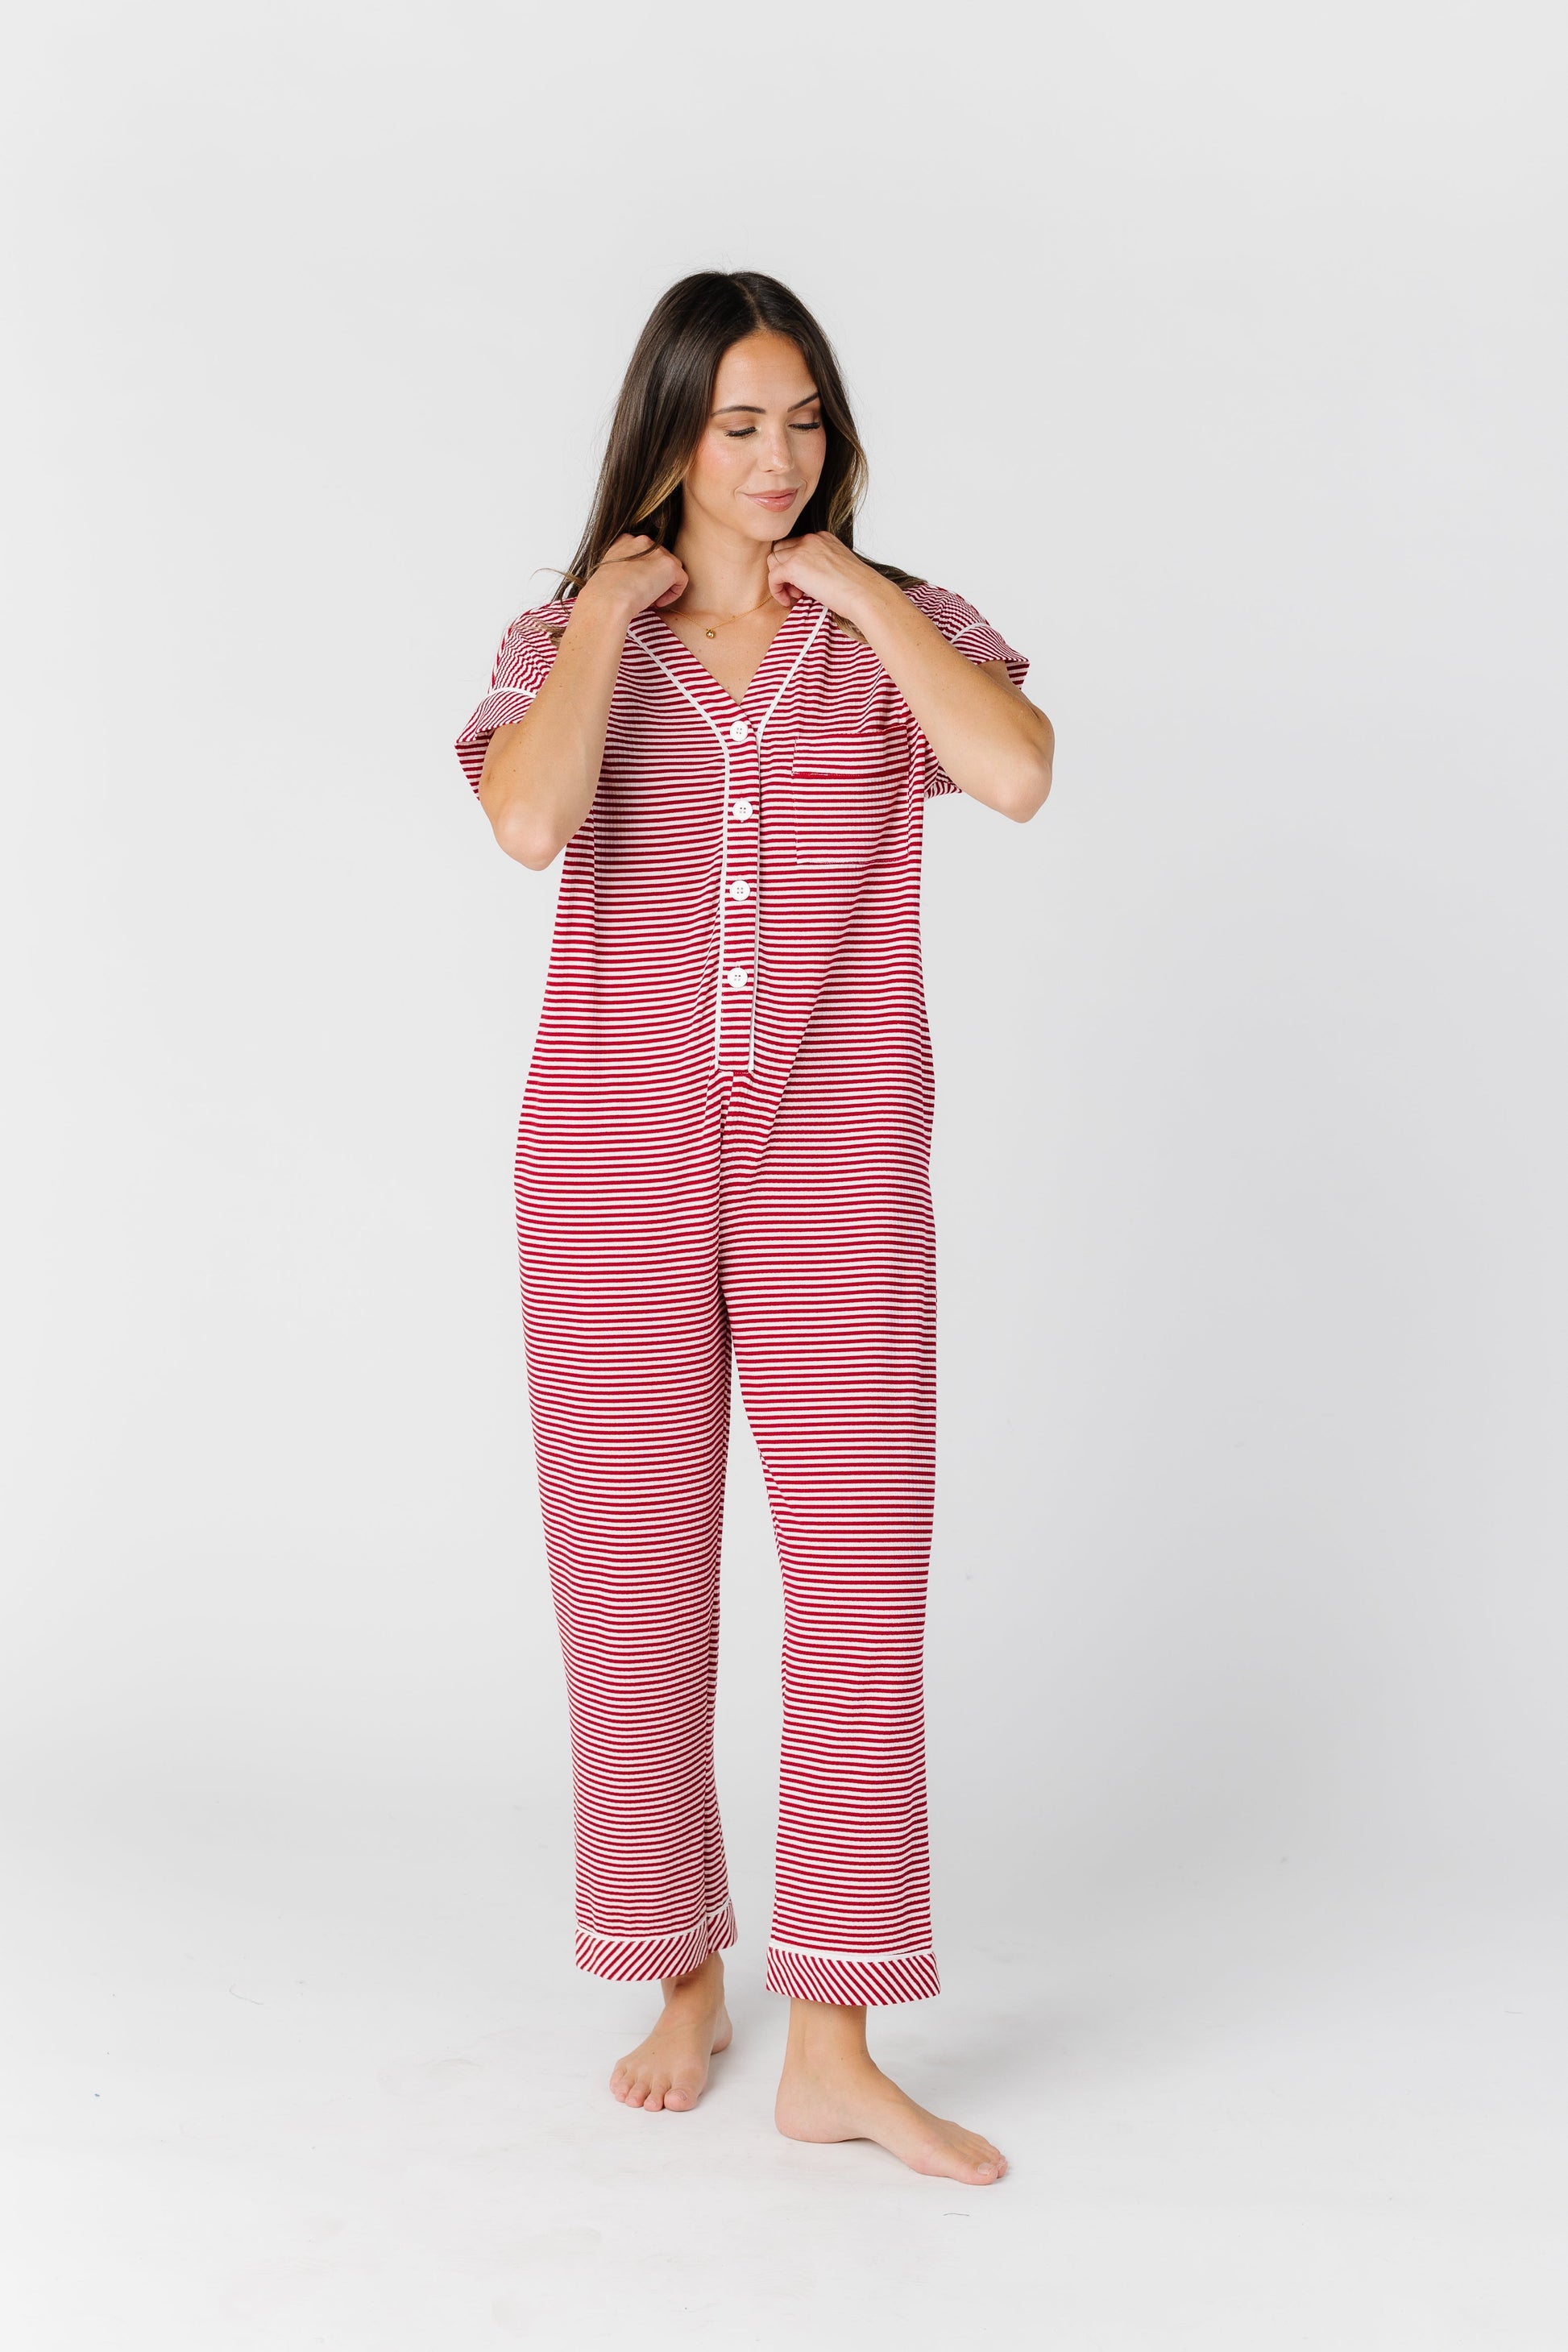 Striped Pajama Onesie WOMEN'S PAJAMAS brass & roe Red Stripe XL 